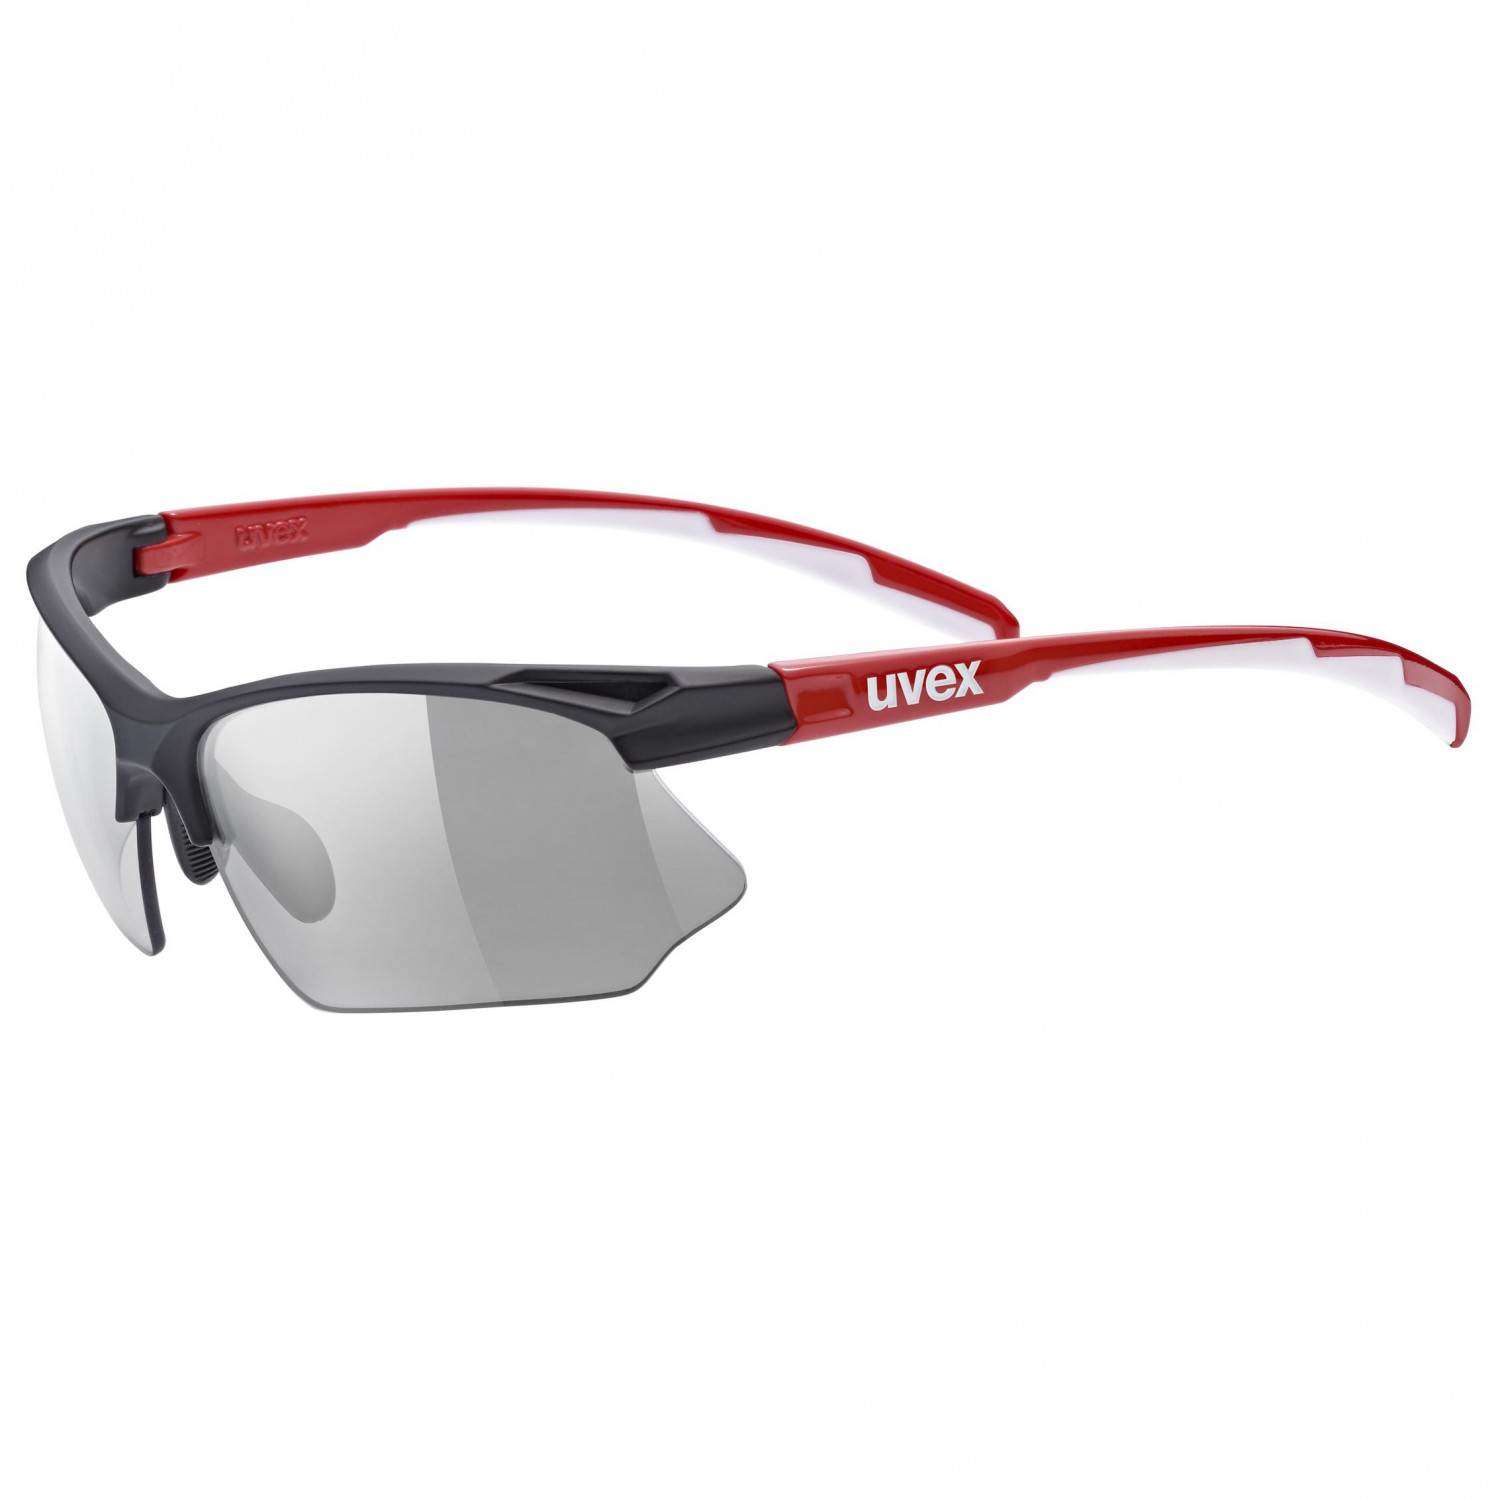 Велосипедные очки Uvex Sportstyle 802 Variomatic Cat: 1 3, цвет Black Red White очки uvex 9161005 54 г blue black